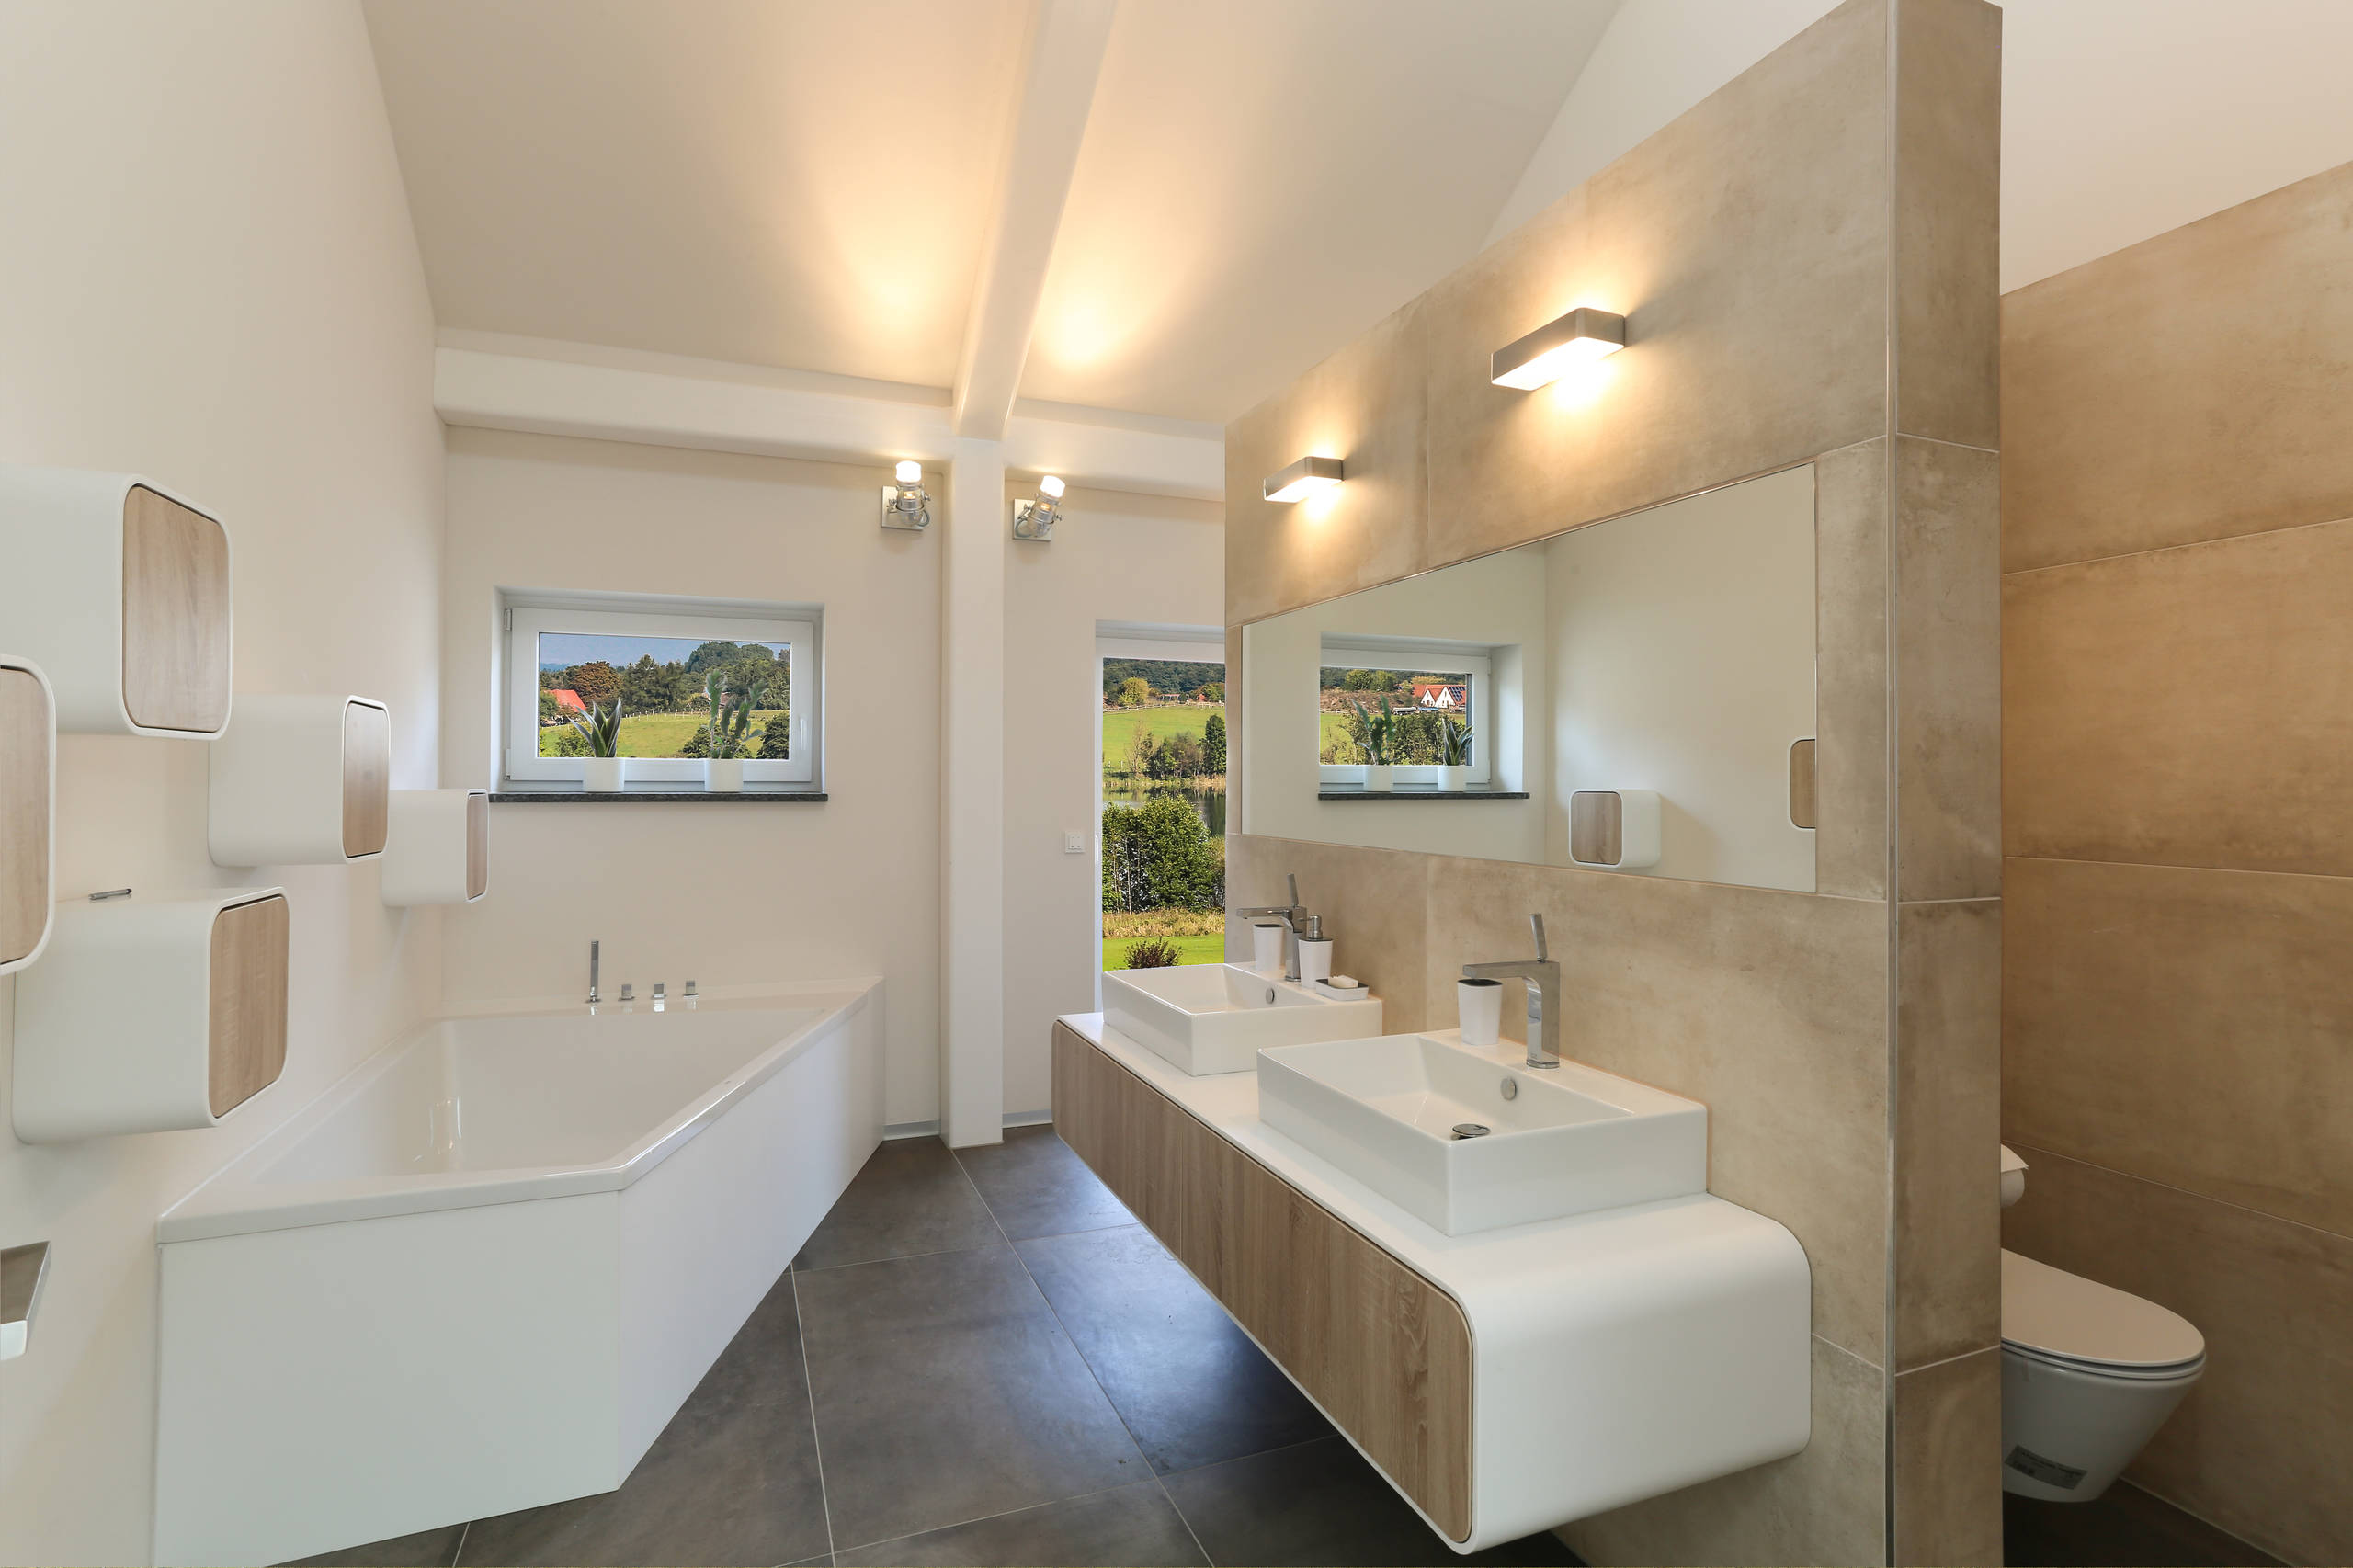  комната в светлых тонах: реальные фото ванной комнаты в .